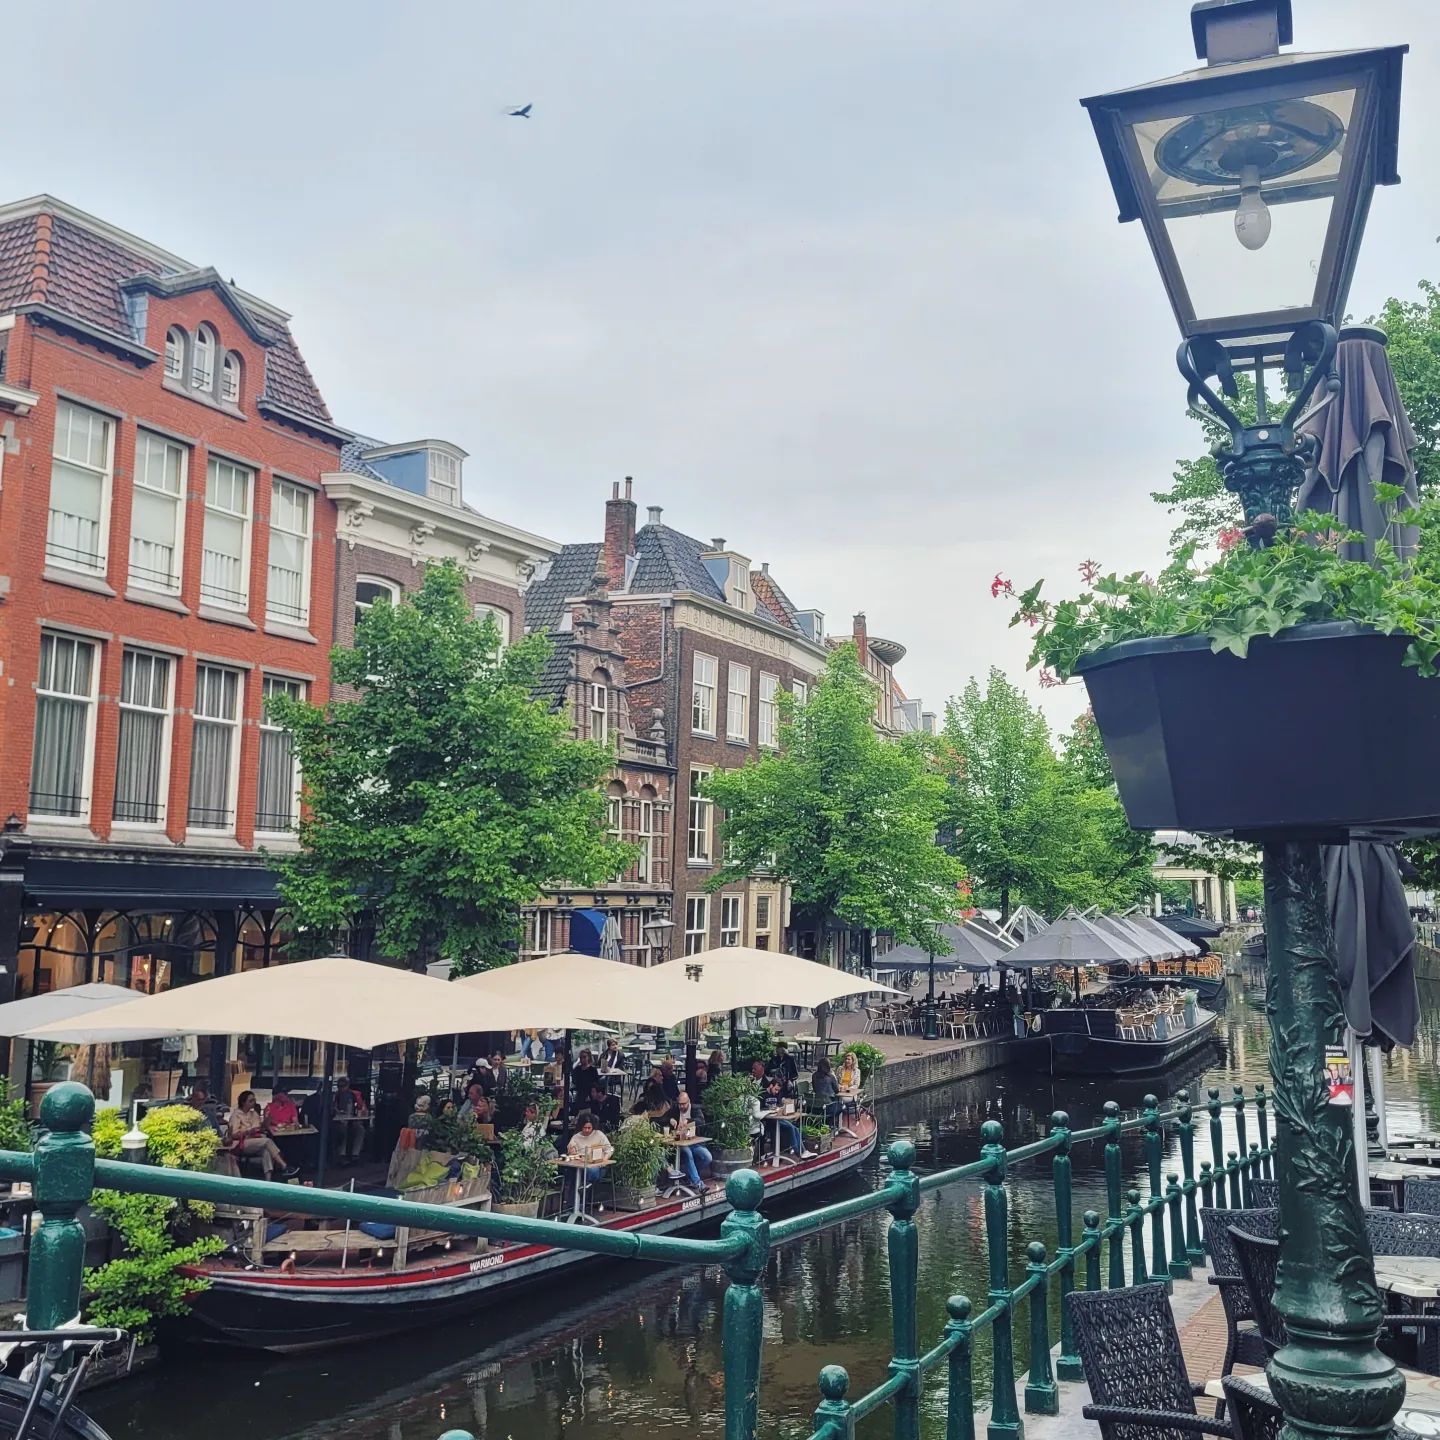 Hollandliebe!

Auch mit grauem Himmel hat uns die niederländische Stadt Leiden heute verzaubert. Wunderschöne Häuser, Gedichte an Wandmauern und die älteste Universität der Niederlande inklusive beeindruckendem botanischen Garten laden zum Verweilen ein ♥️

Welche niederländische Stadt ist denn euer absoluter Favorit?
______________________

#Leiden #niederlande
#hollandliebe #südholland #zuidholland #holland #stadvanontdekkingen